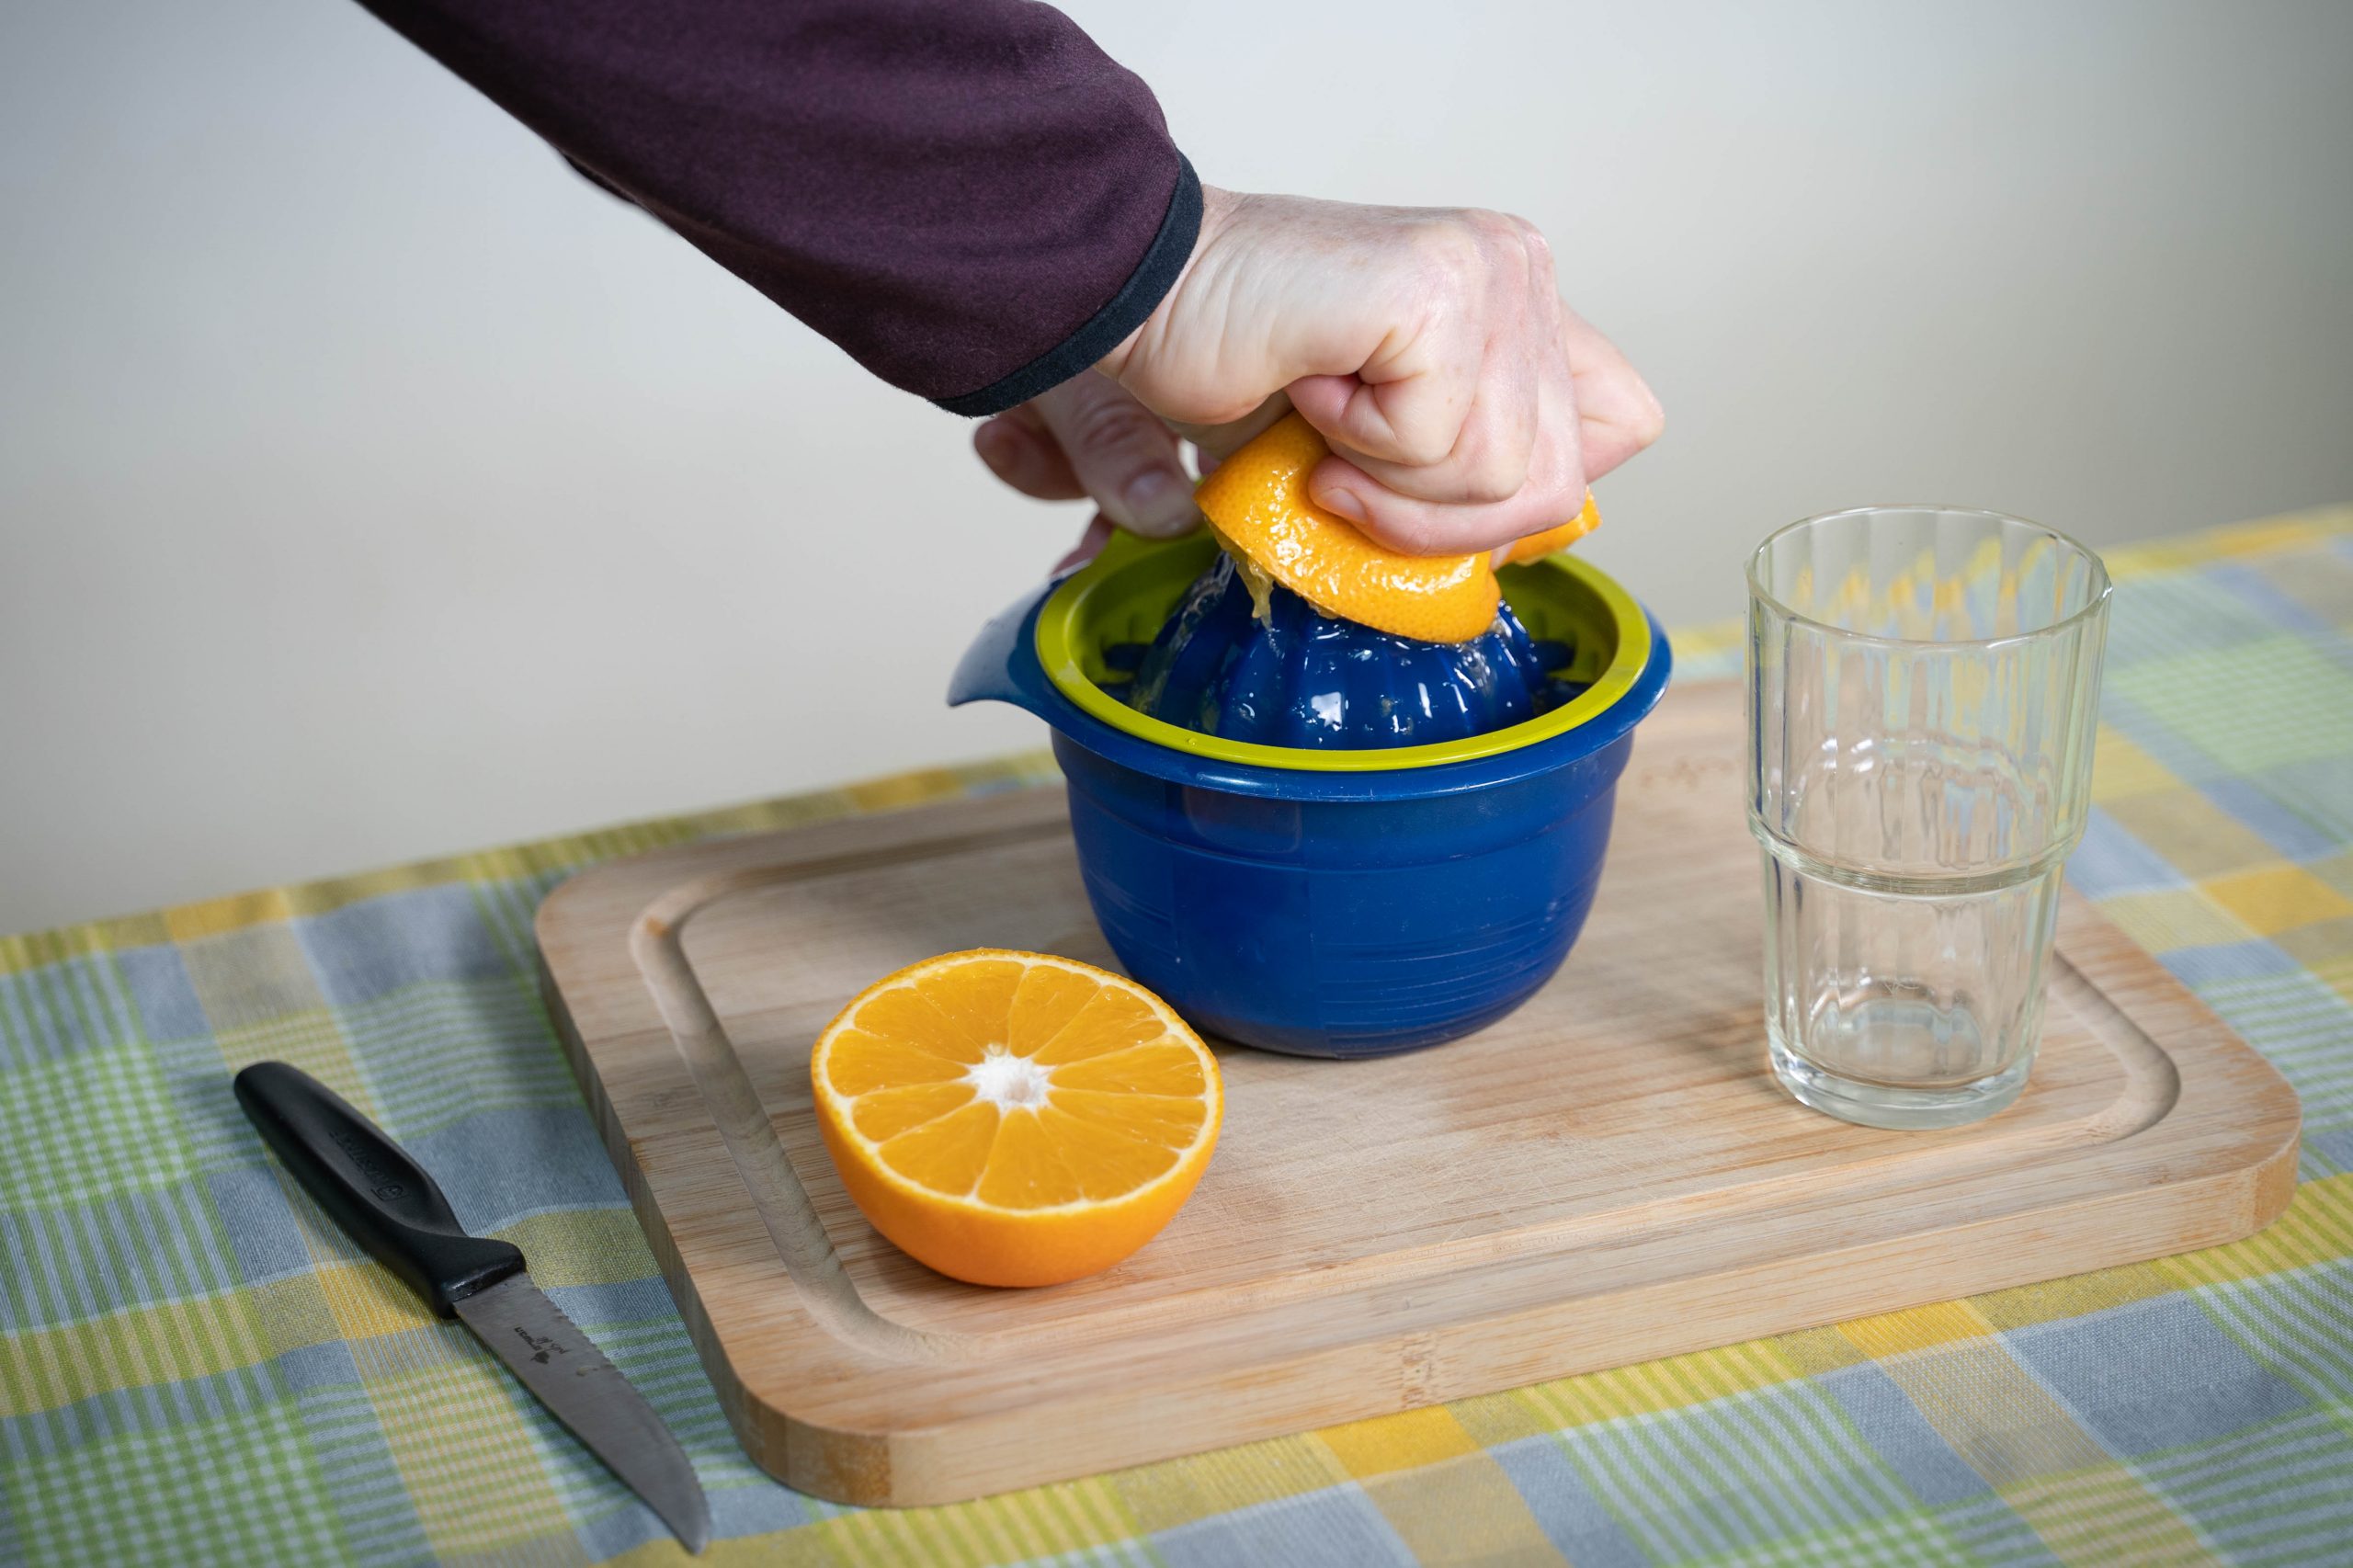 .יד סוחטת חצי תפוז במסחטה שנמצאת על קרש חיתוך על שולחן. לצד המסחטה, חצי תפוז נוסף, כוס זכוכית ריקה וסכין